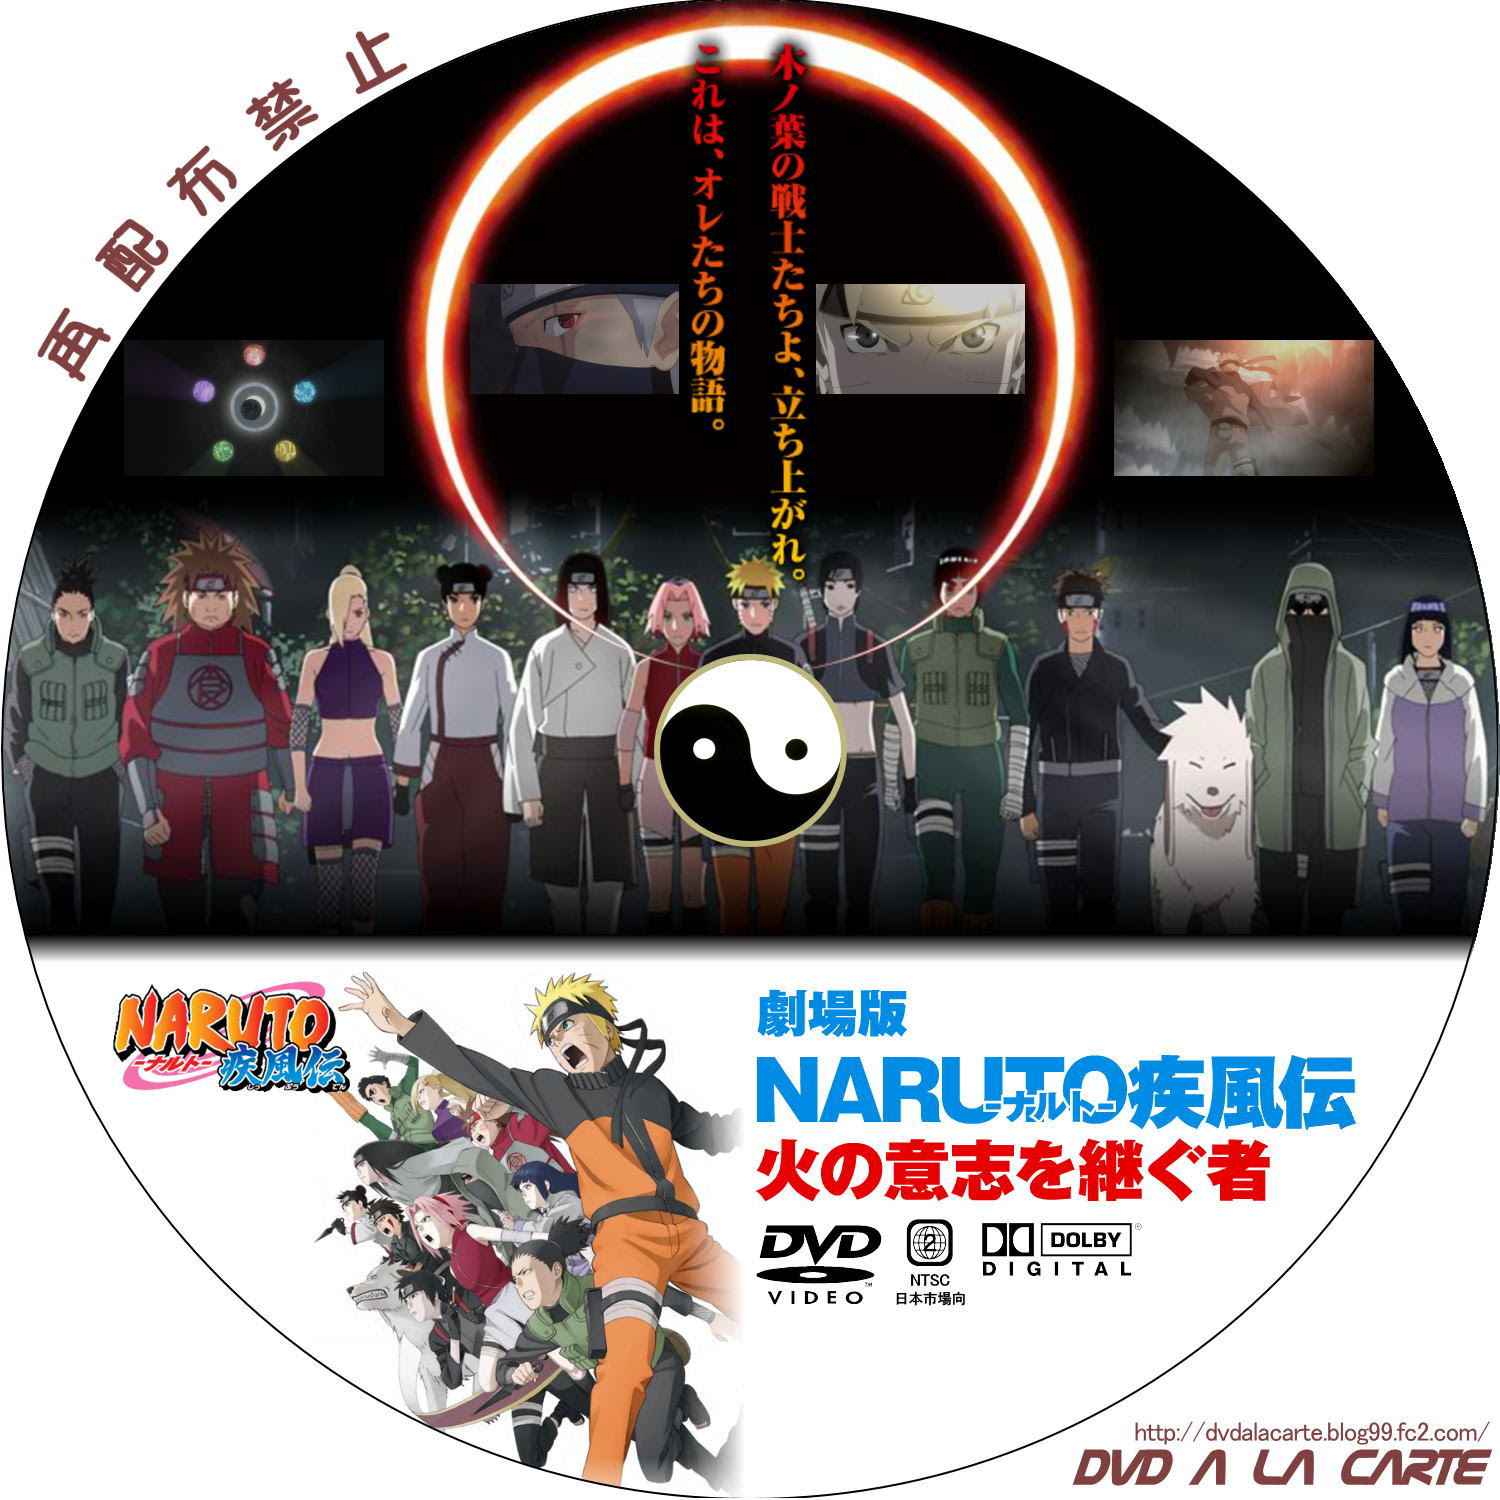 劇場版 Naruto ナルト 疾風伝 絆 完全生産限定版 アニプレックス